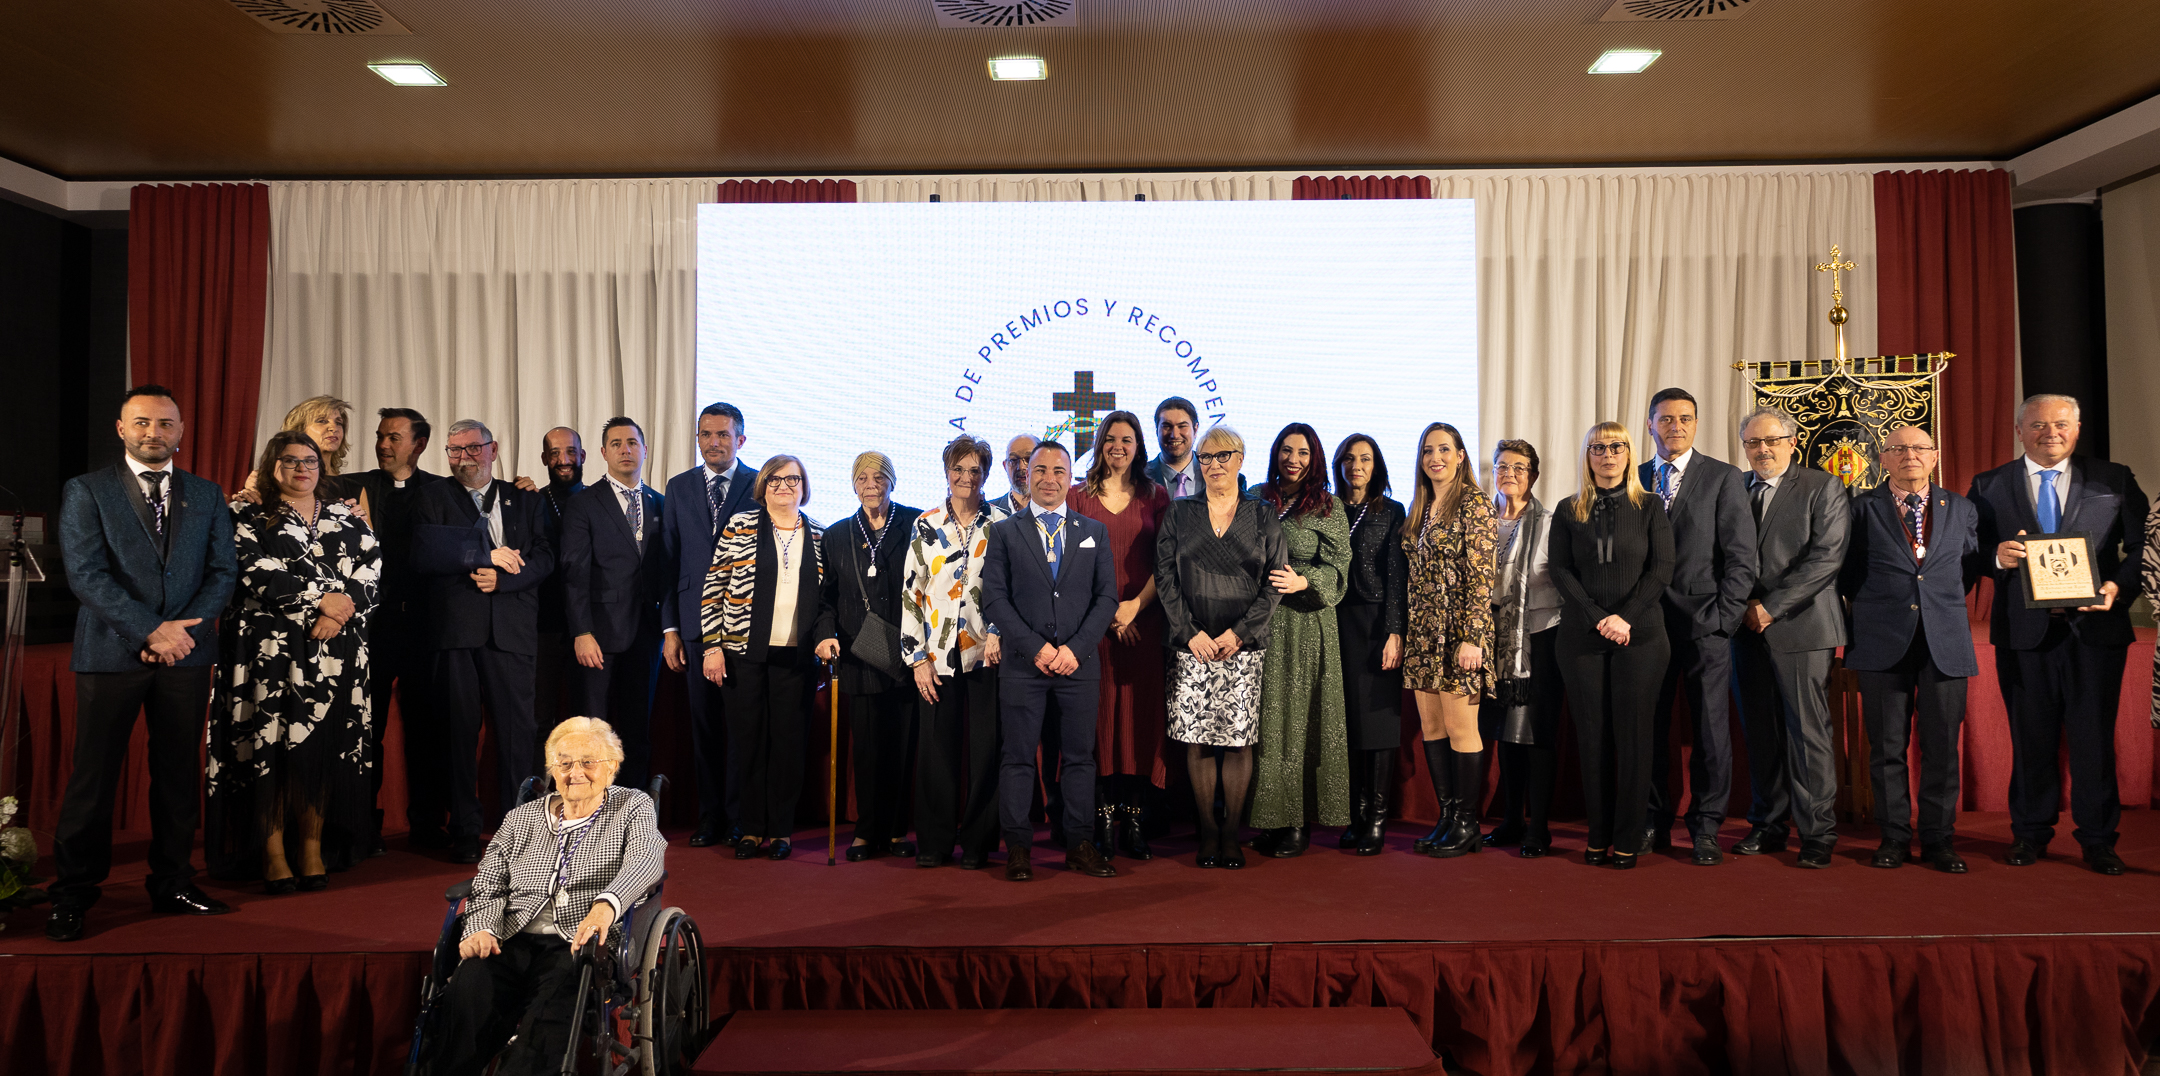 The Semana Santa Marinera de València presents its prestigious awards